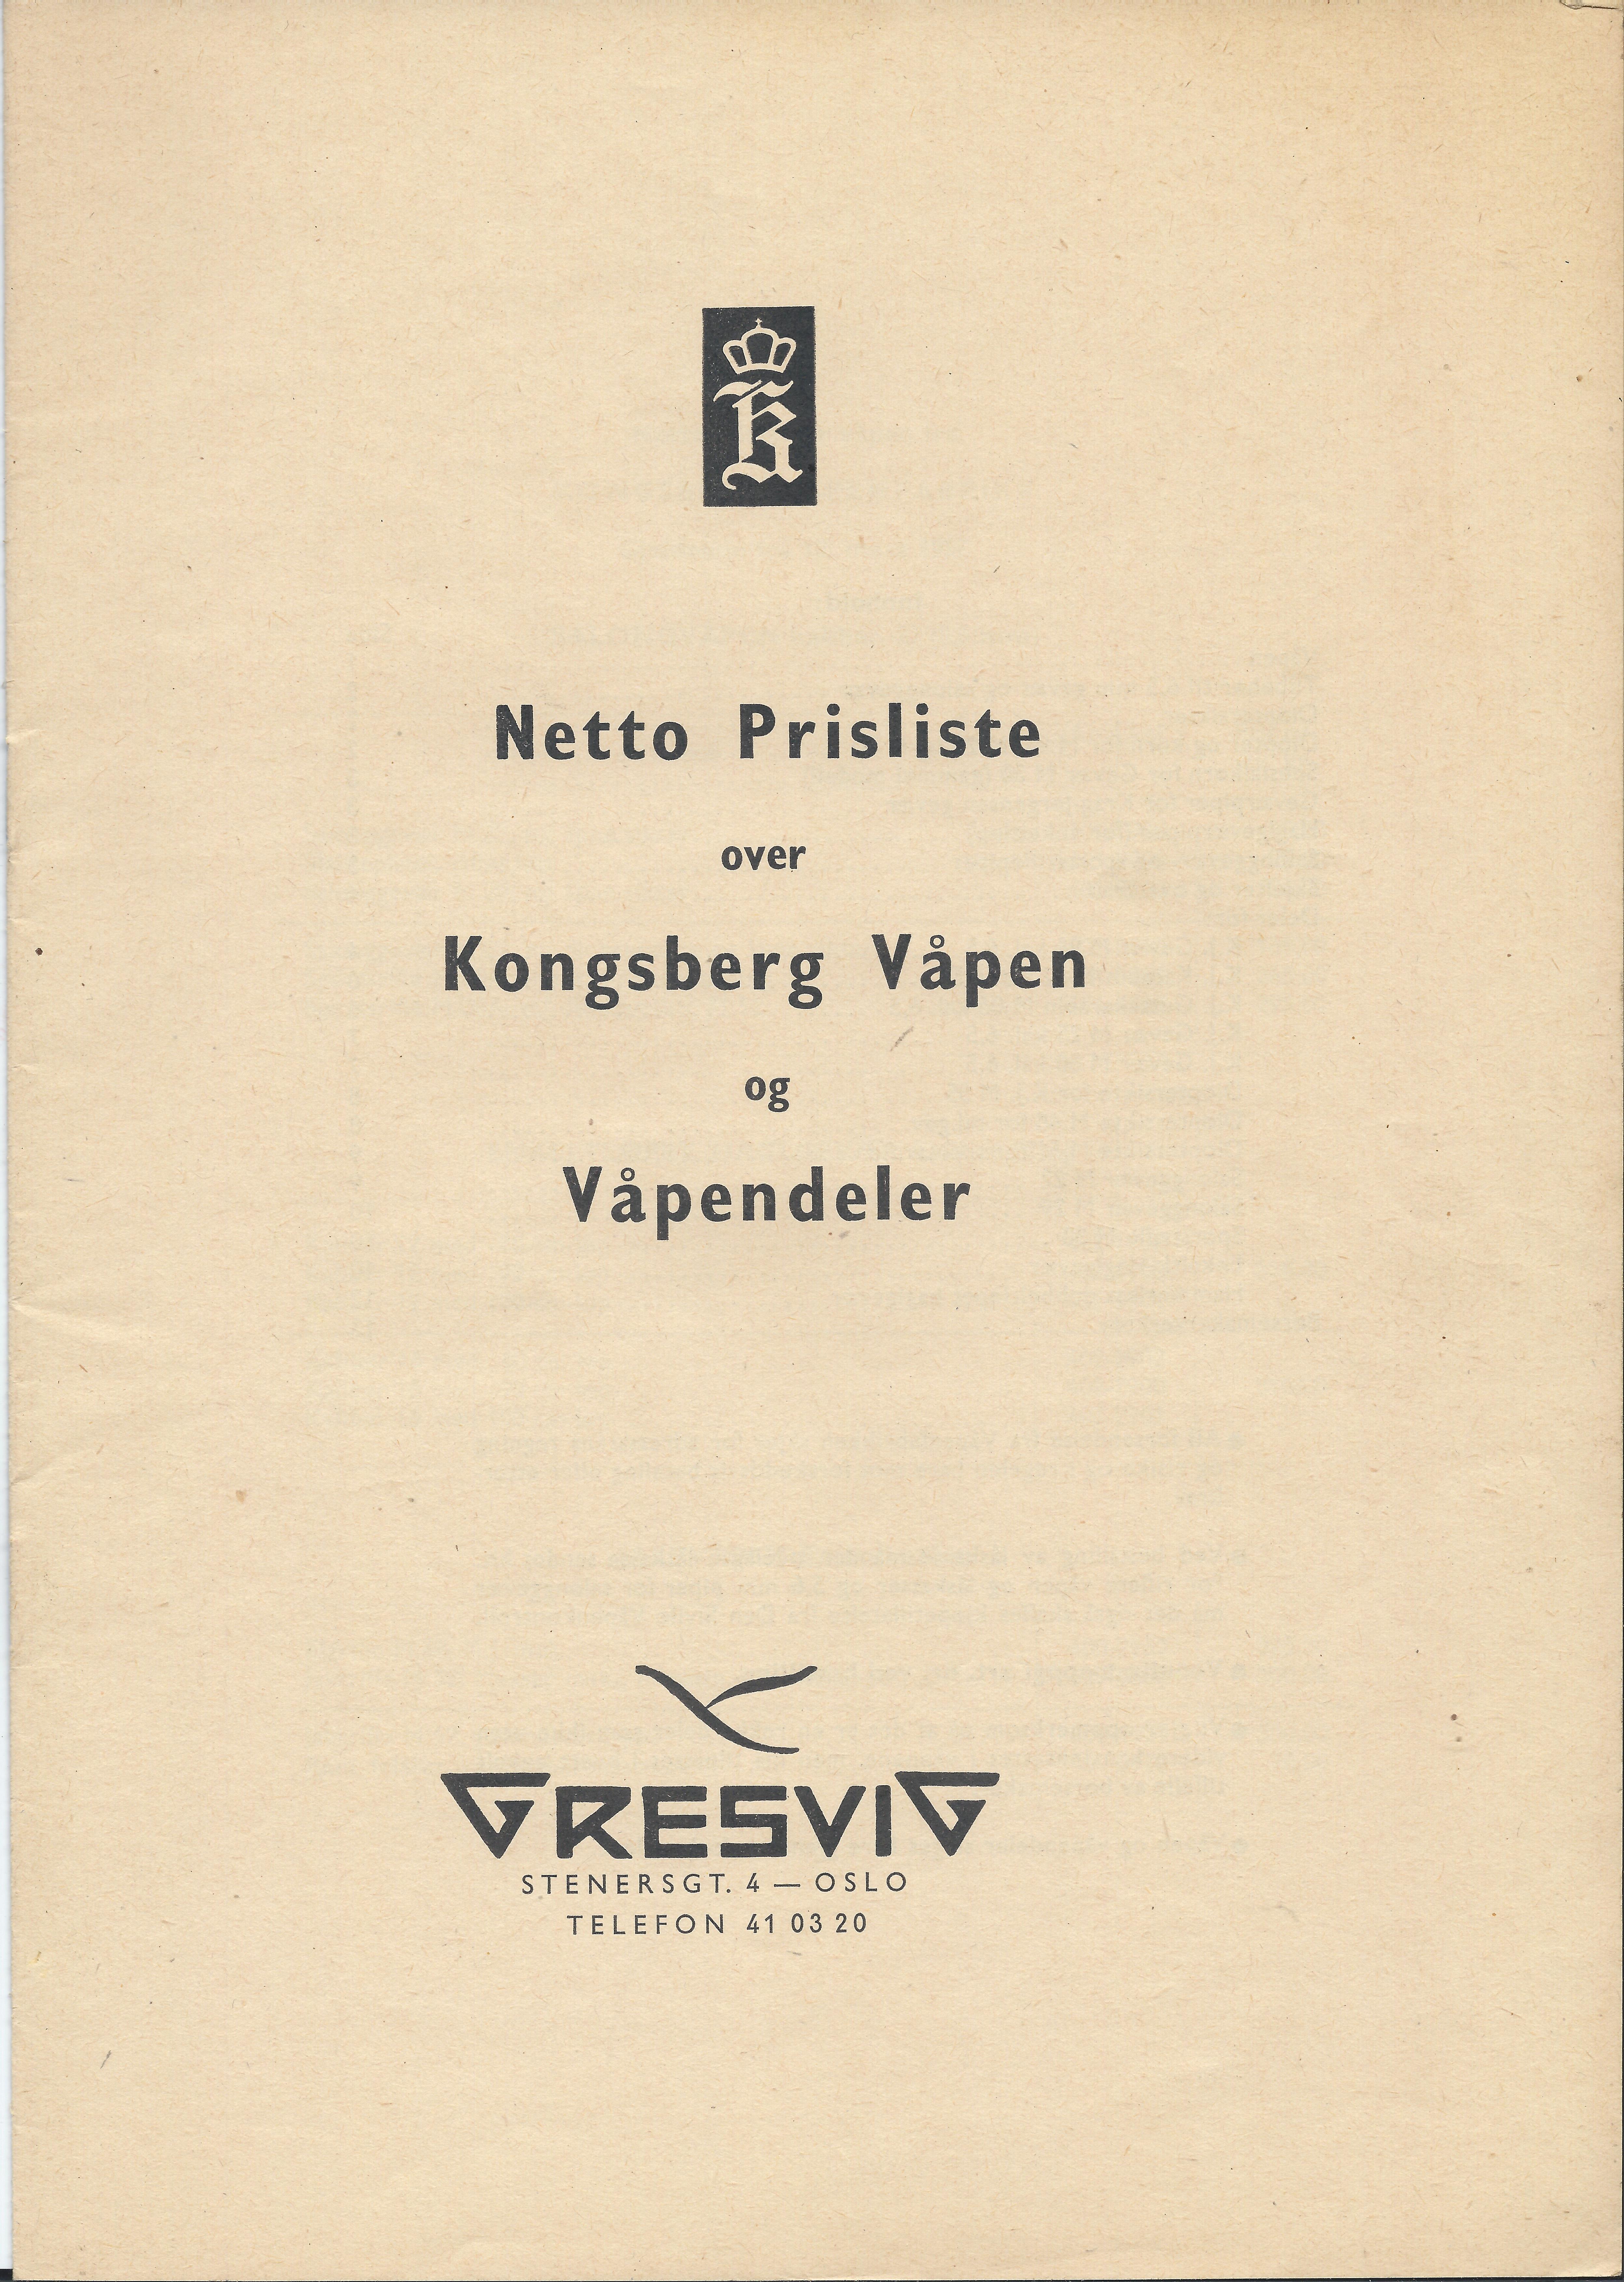 ./doc/KV/KV-Gresvig-Prisliste-Vaapen-og-Deler-Netto-18-Mars-1957-1.jpg